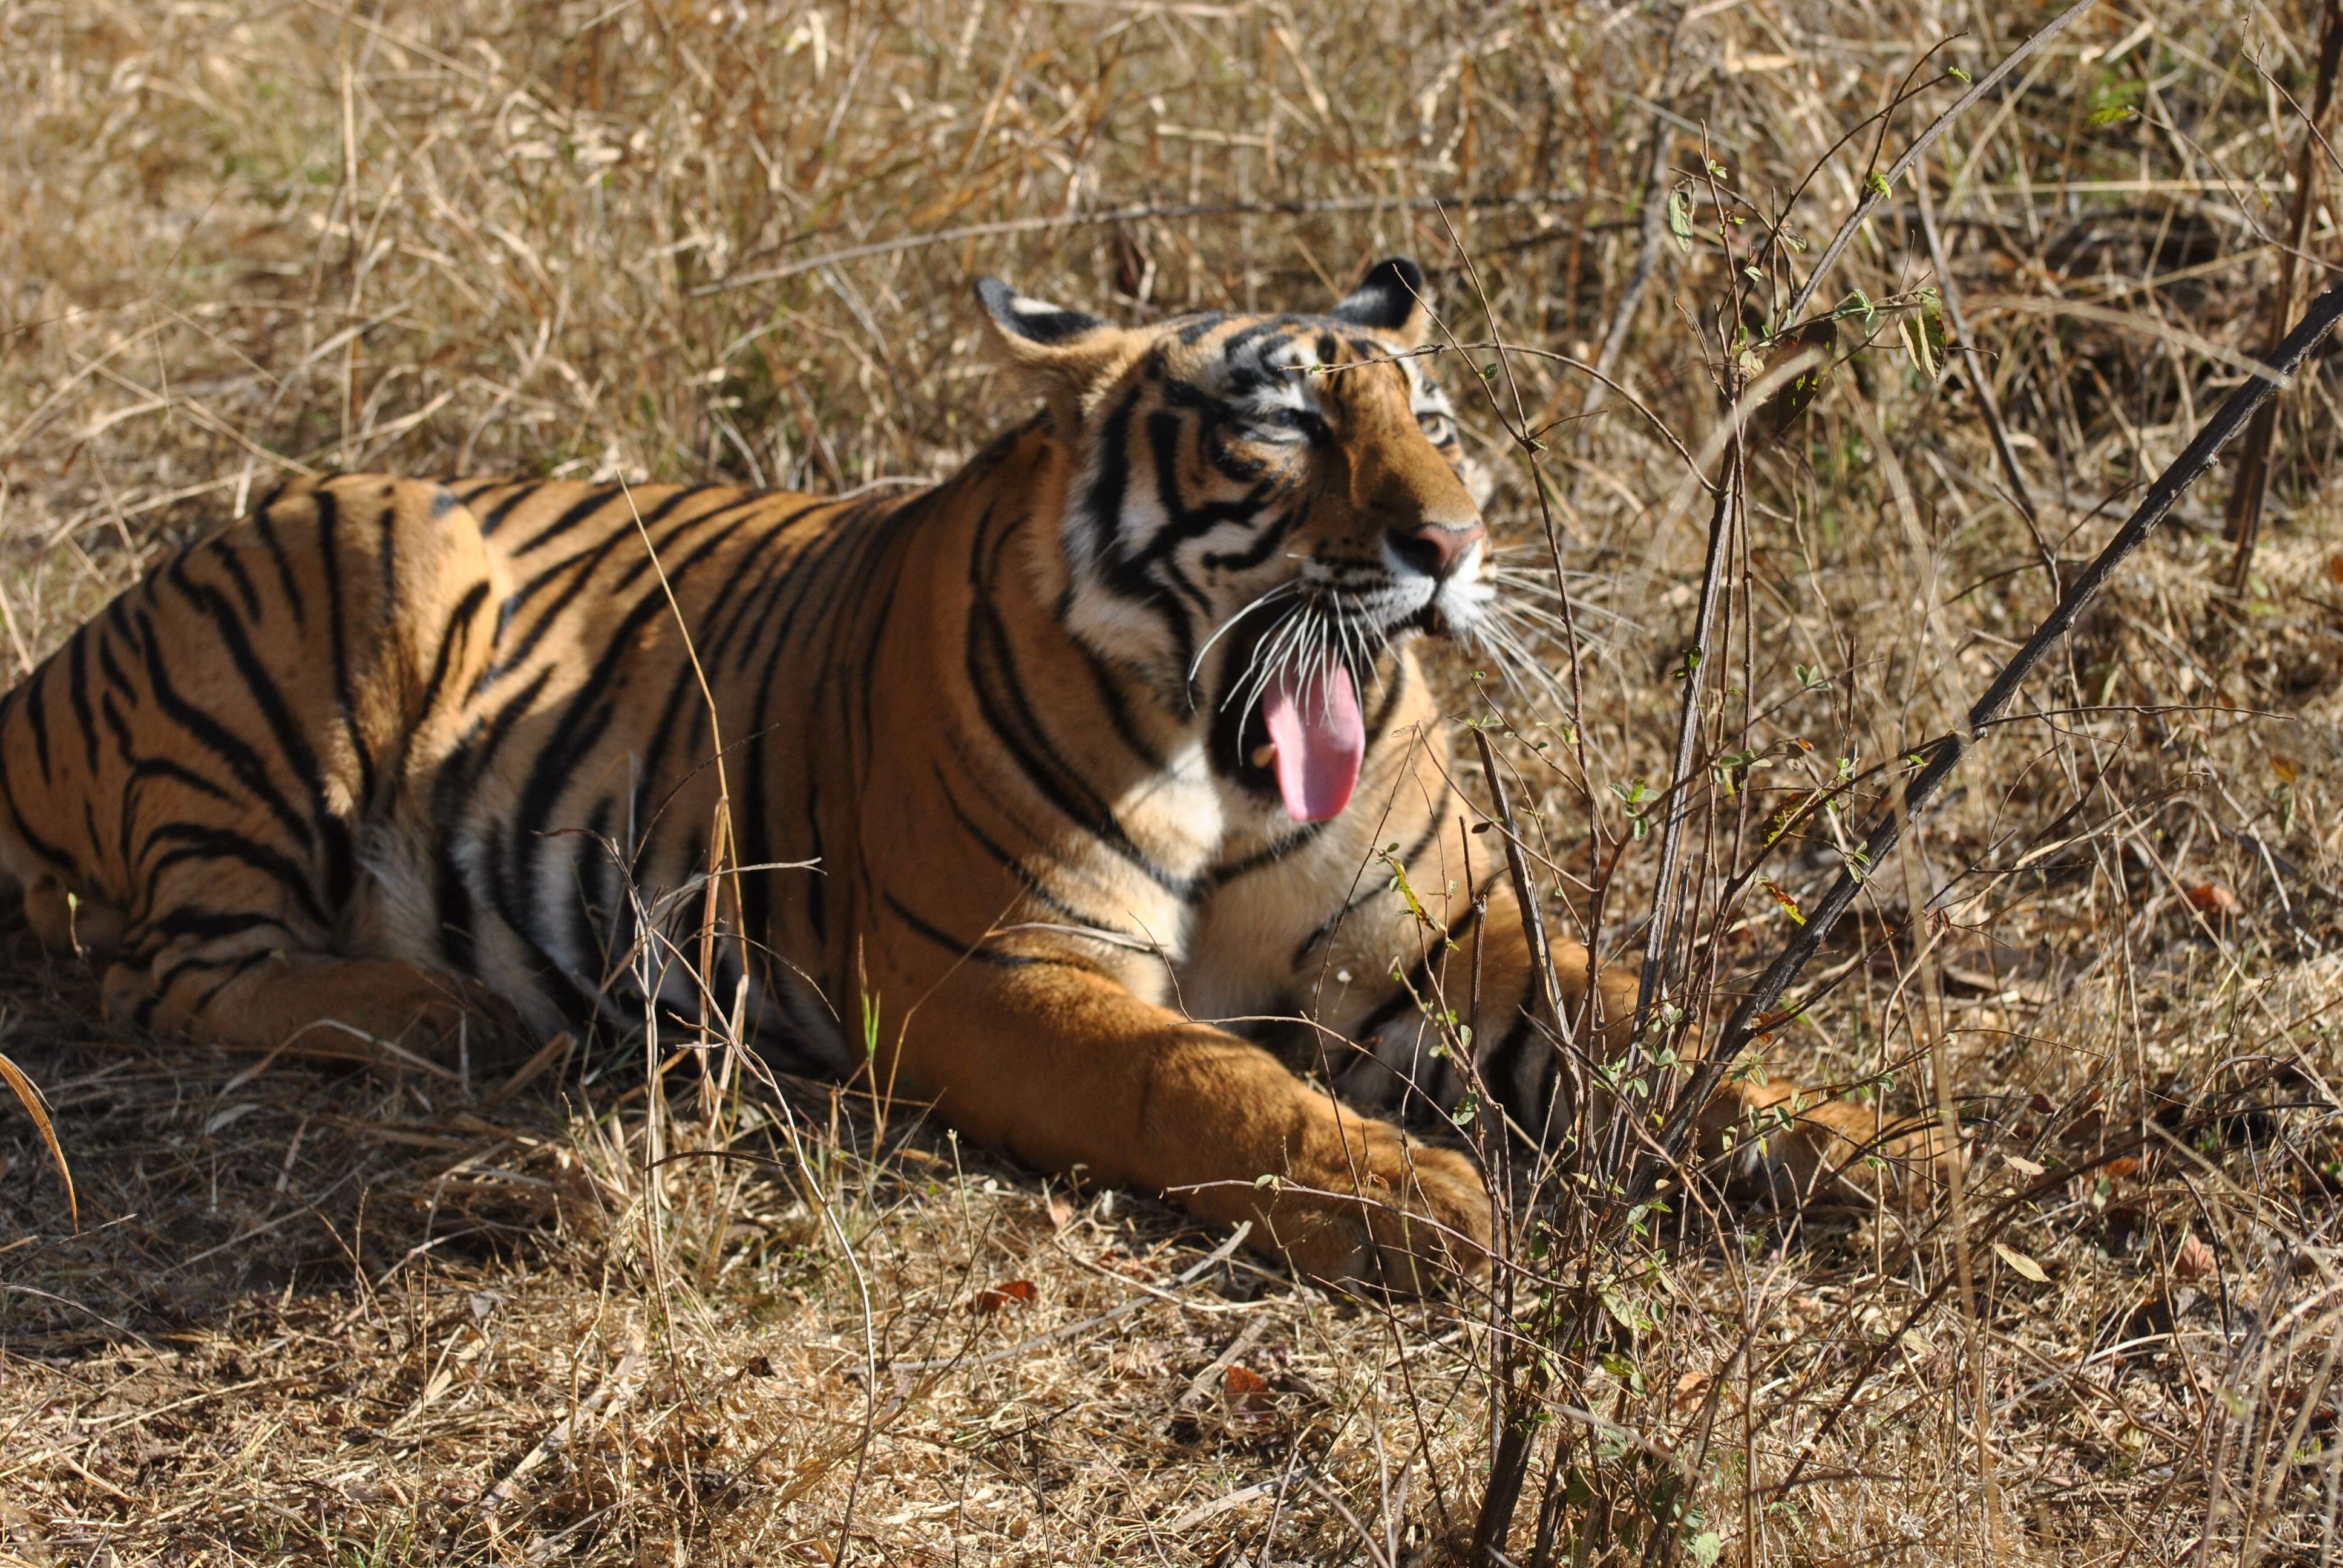 Image de tigre du Bengale